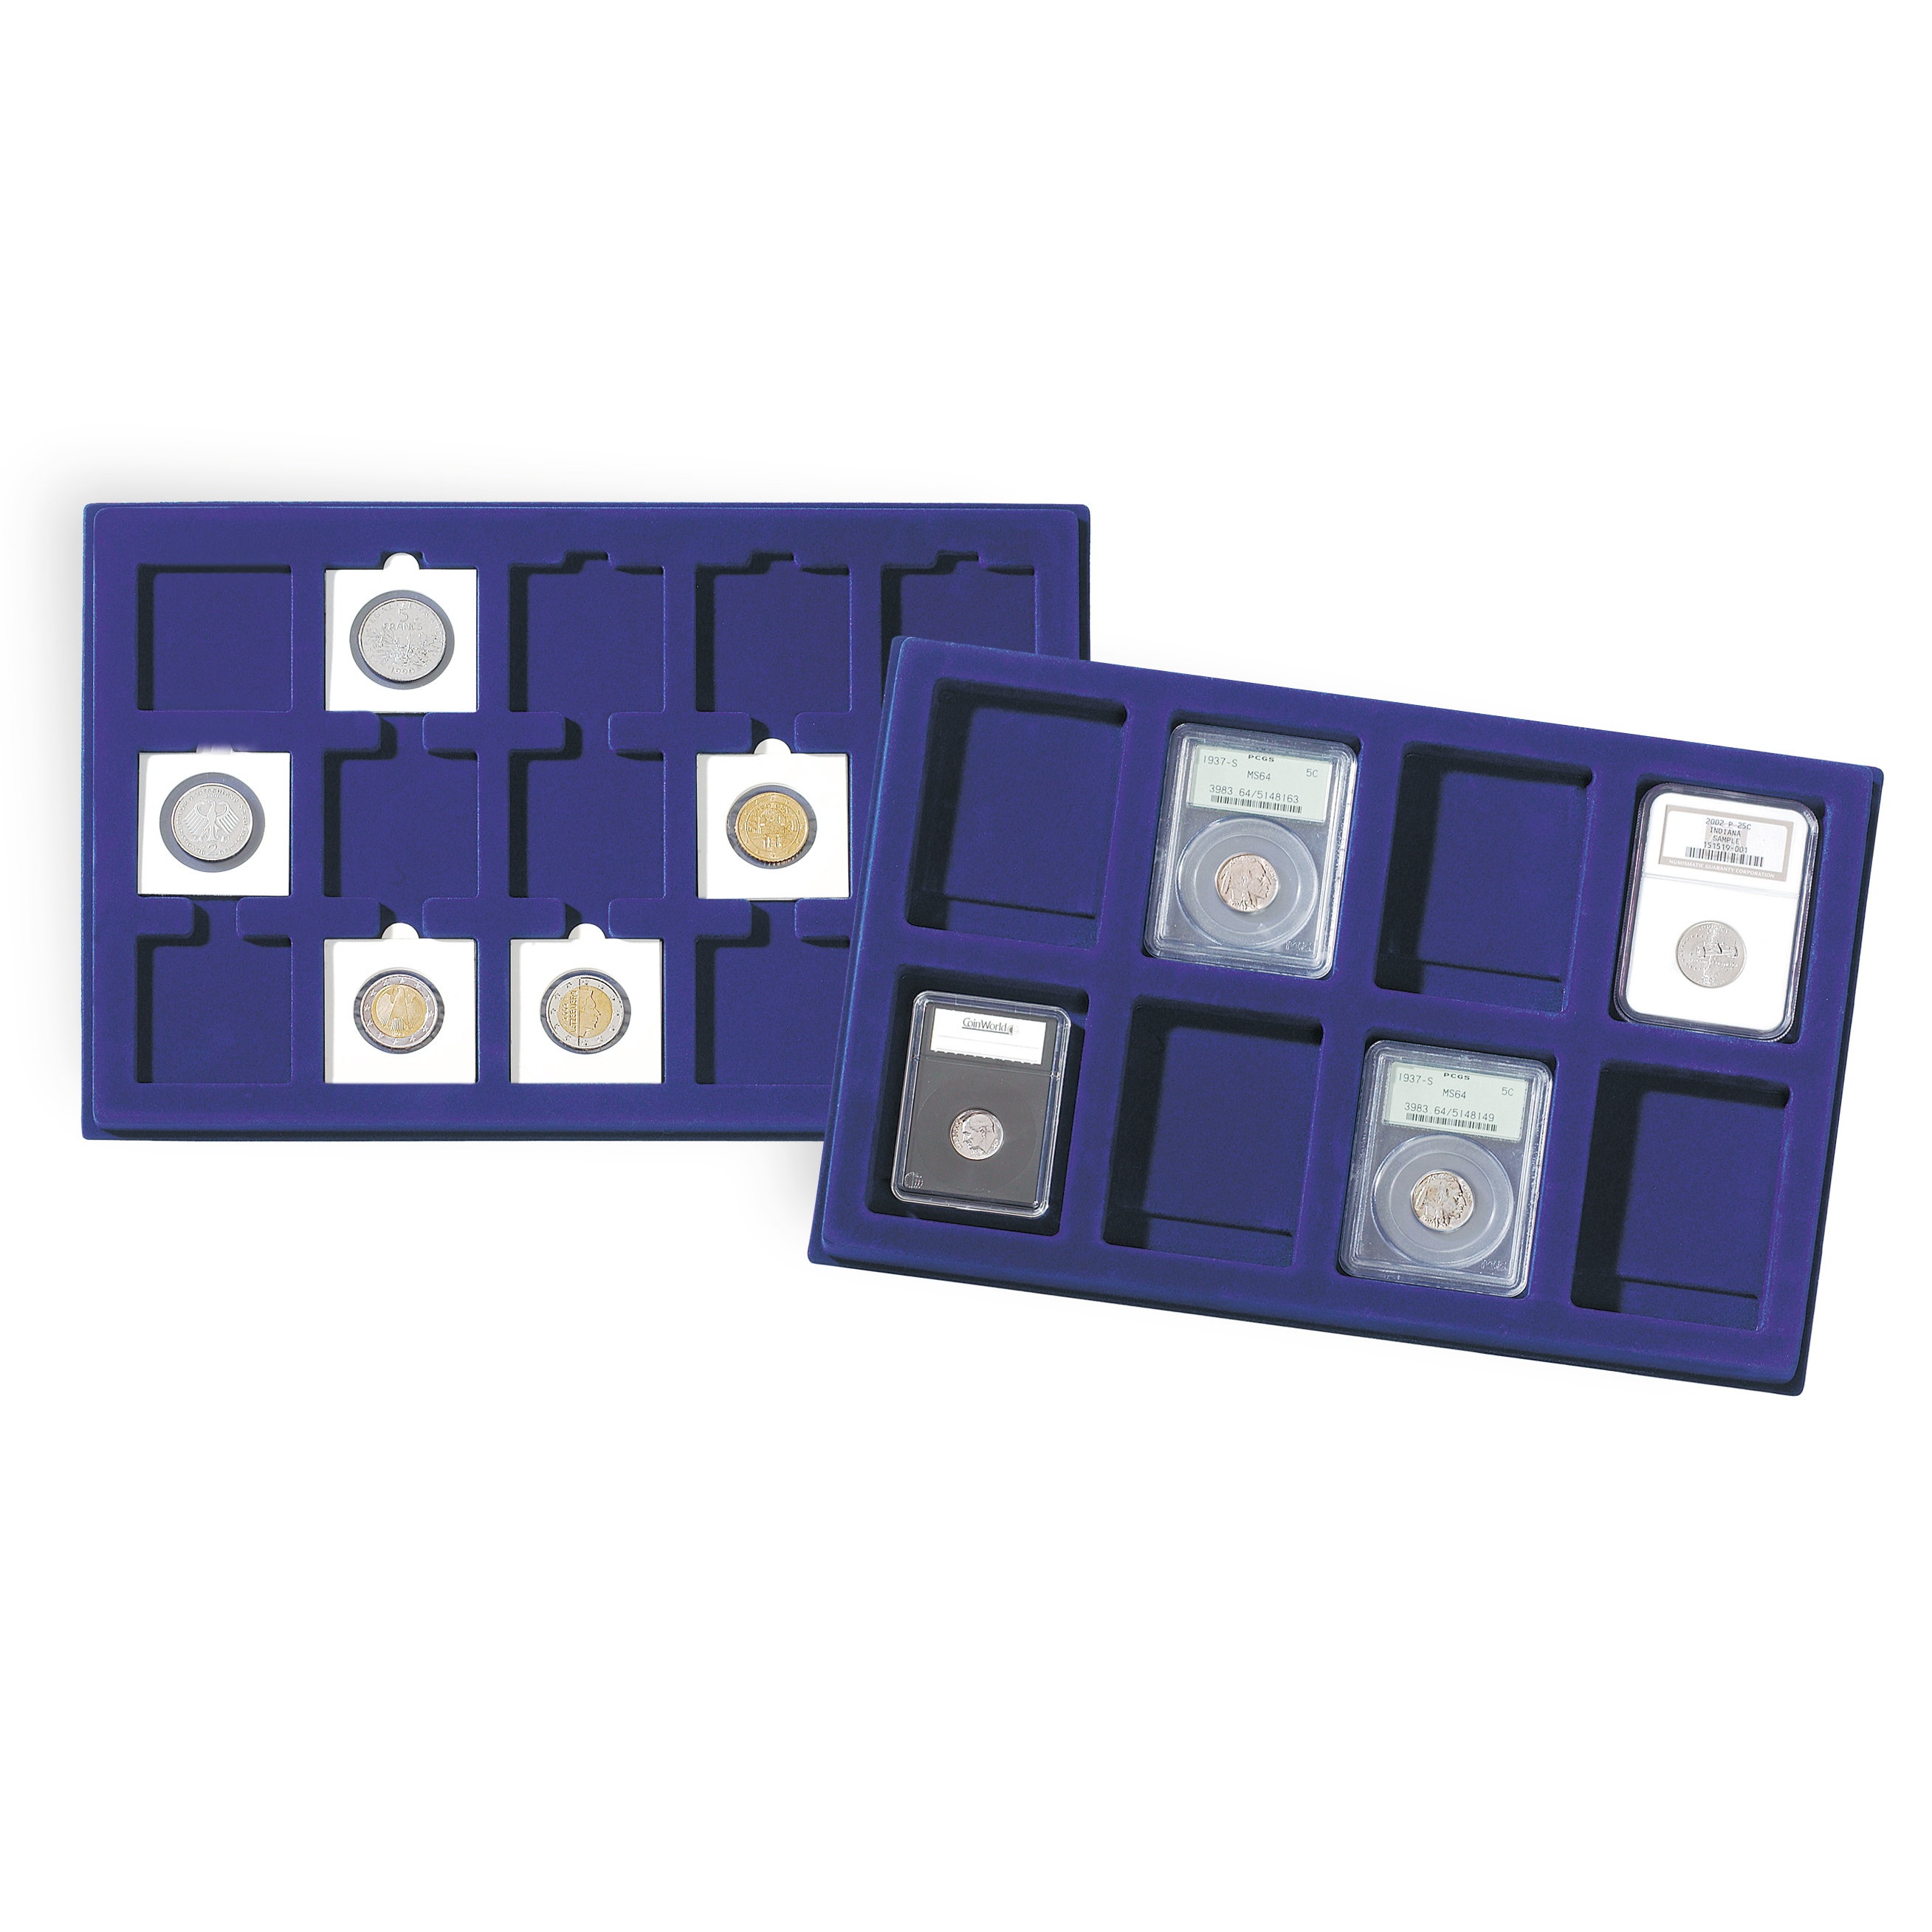 Grande valise numismatique de collection avec 8 plateaux